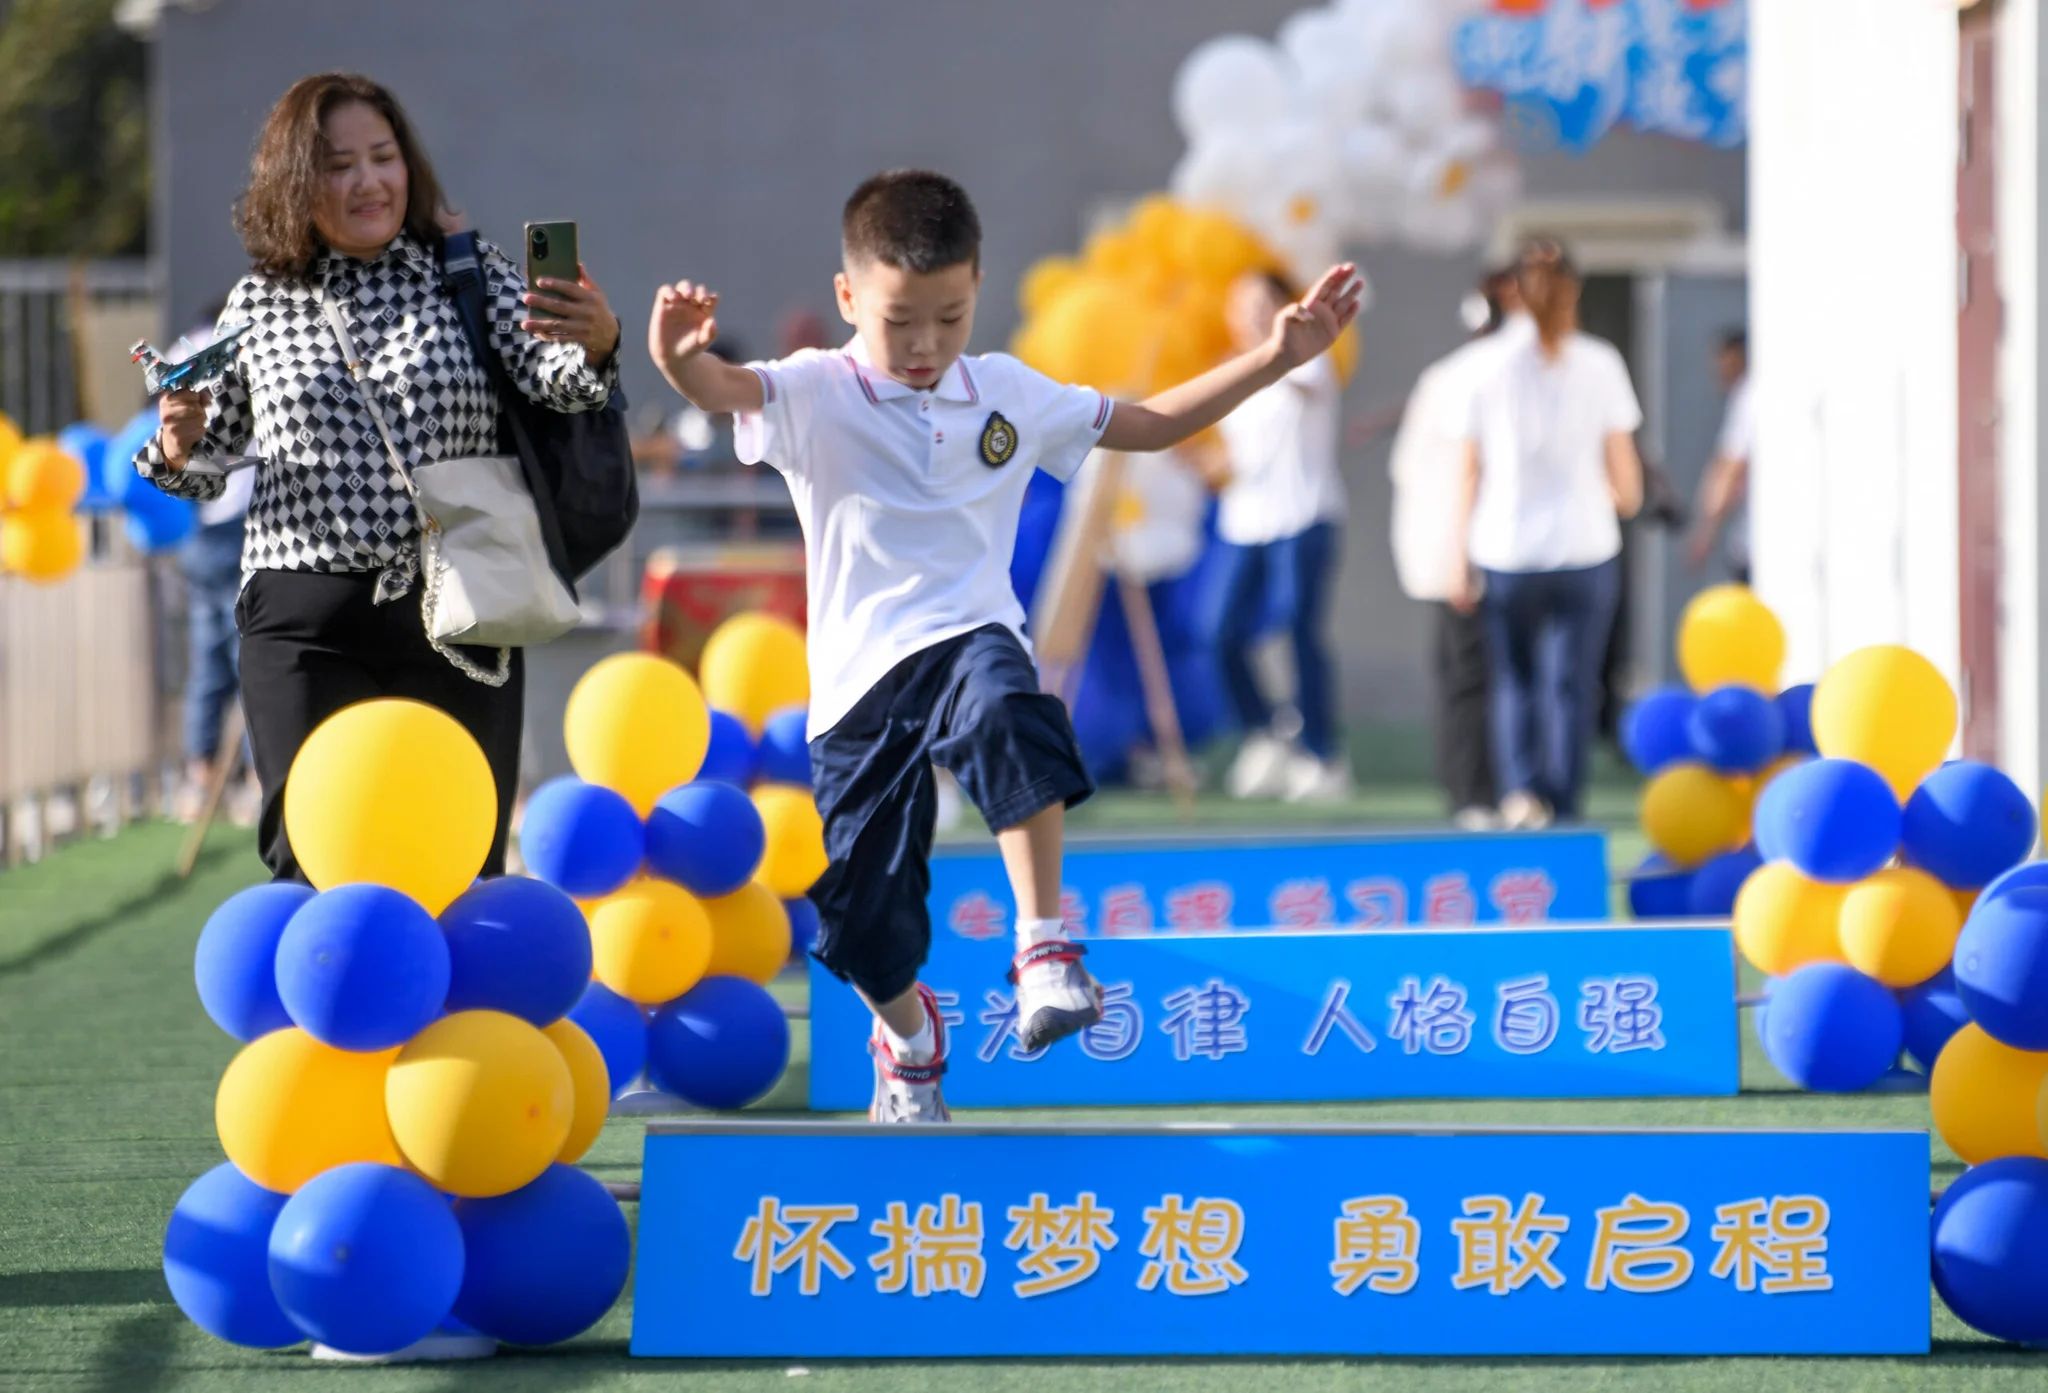 ศธ.จีนแนะเด็กประถม-มัธยม 'เคลื่อนไหวร่างกาย' 2 ชั่วโมงต่อวัน